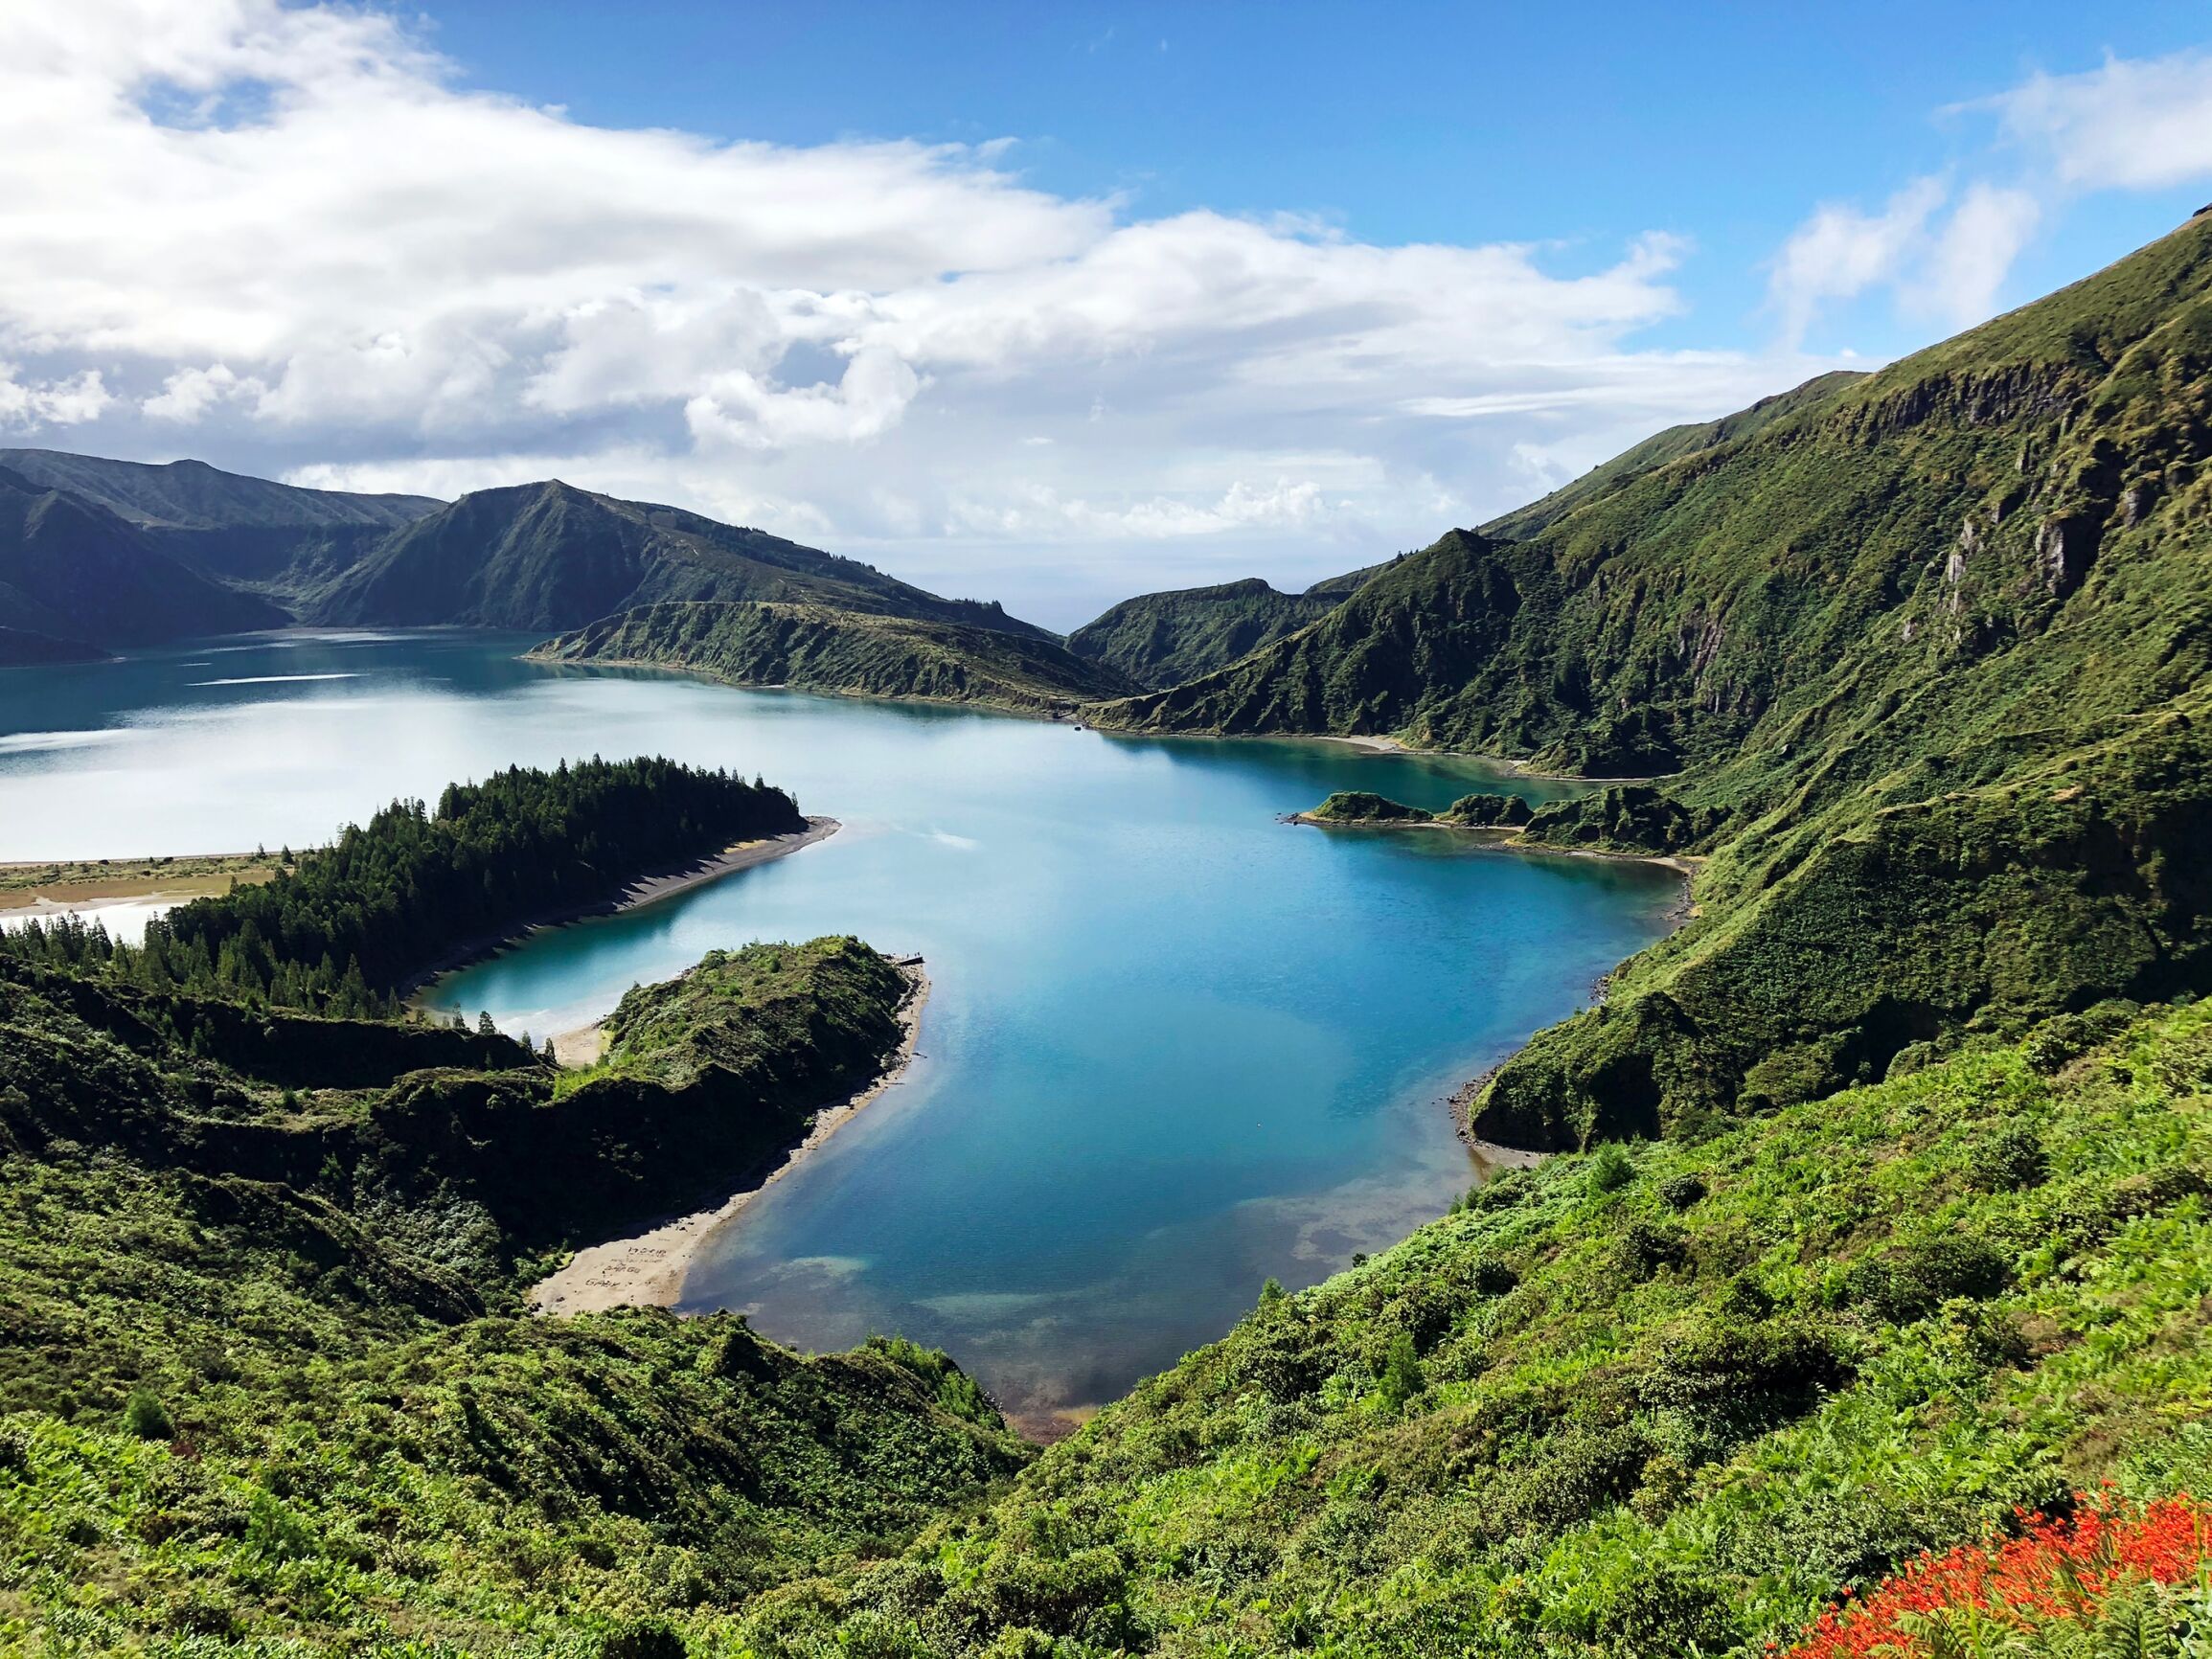 Guide de voyage : points touristiques à visiter aux Açores